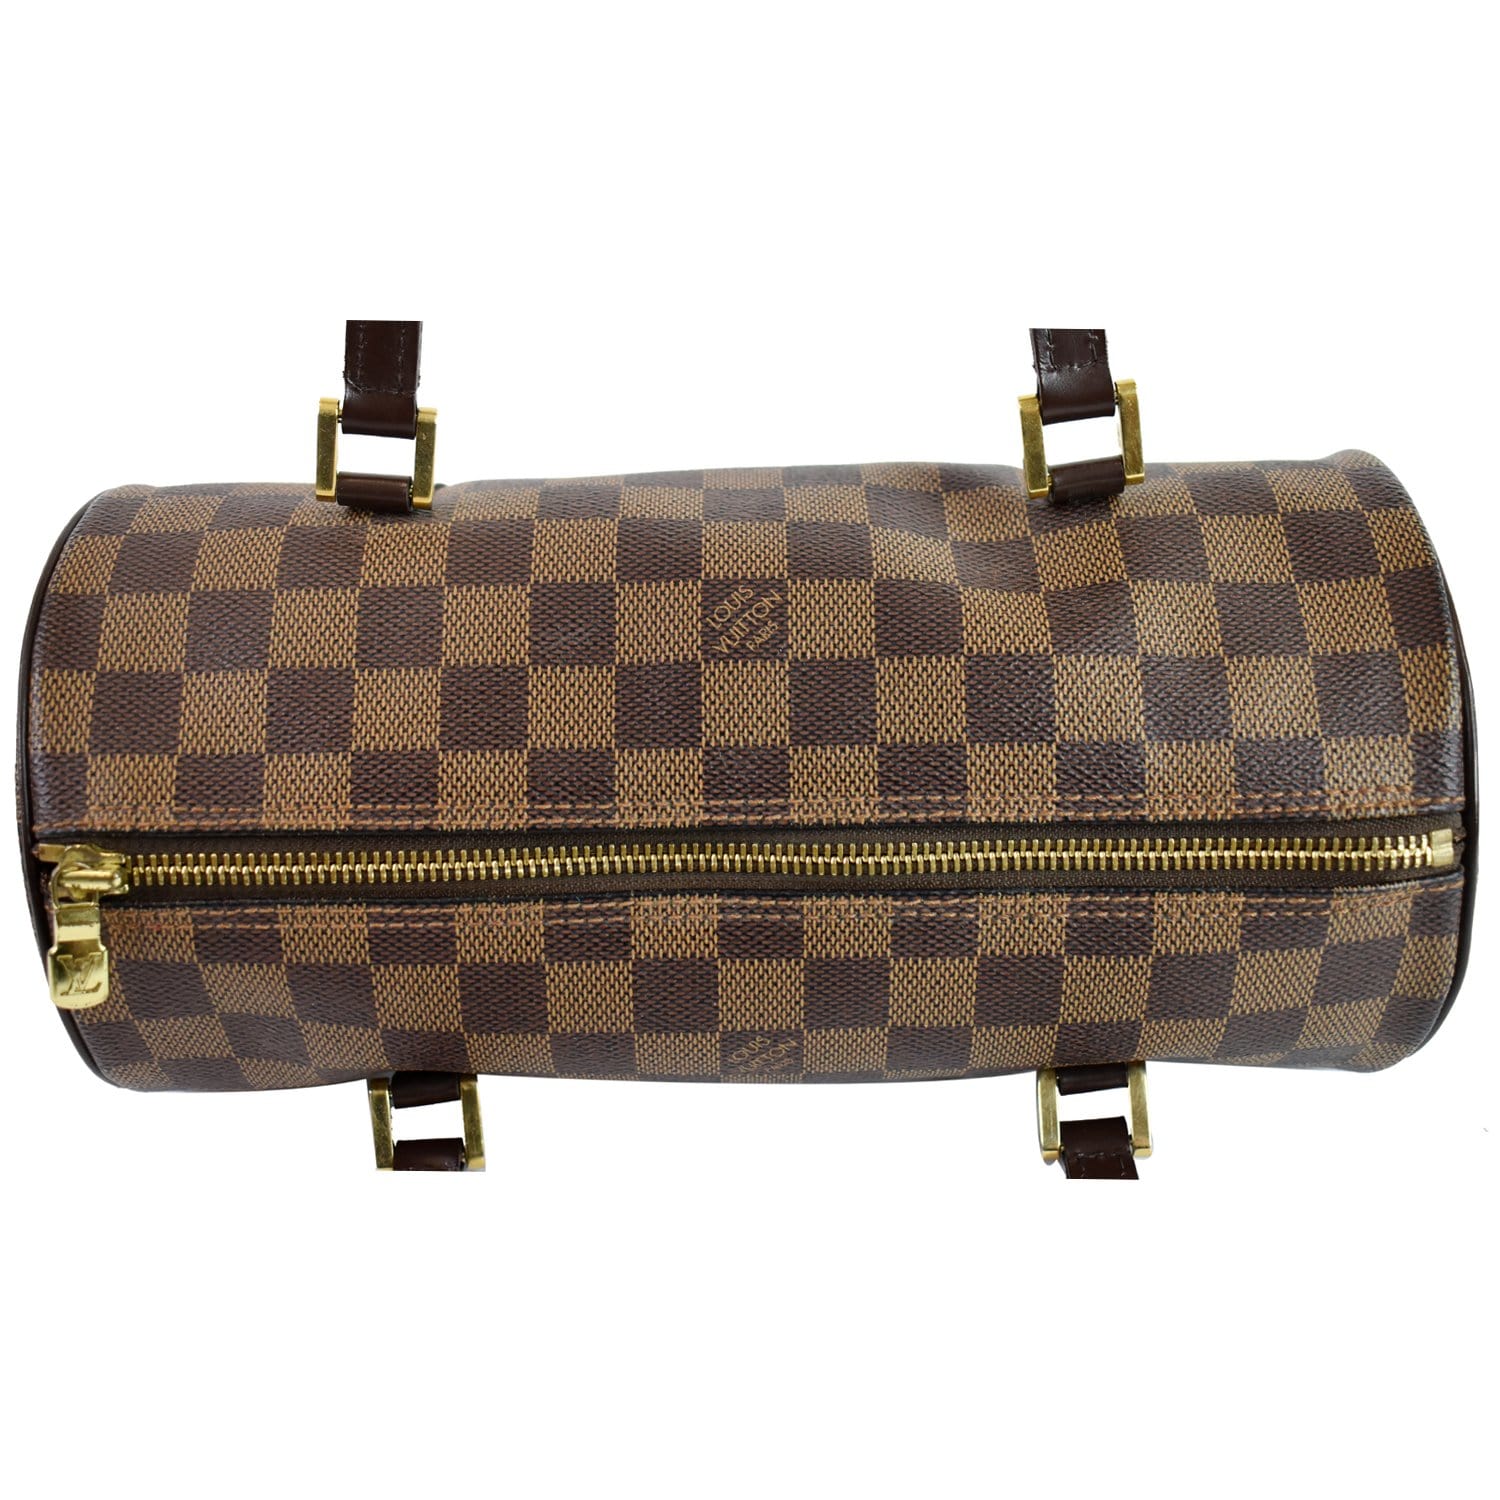 Louis Vuitton 2004 pre-owned Papillon 26 handbag - ShopStyle Tote Bags